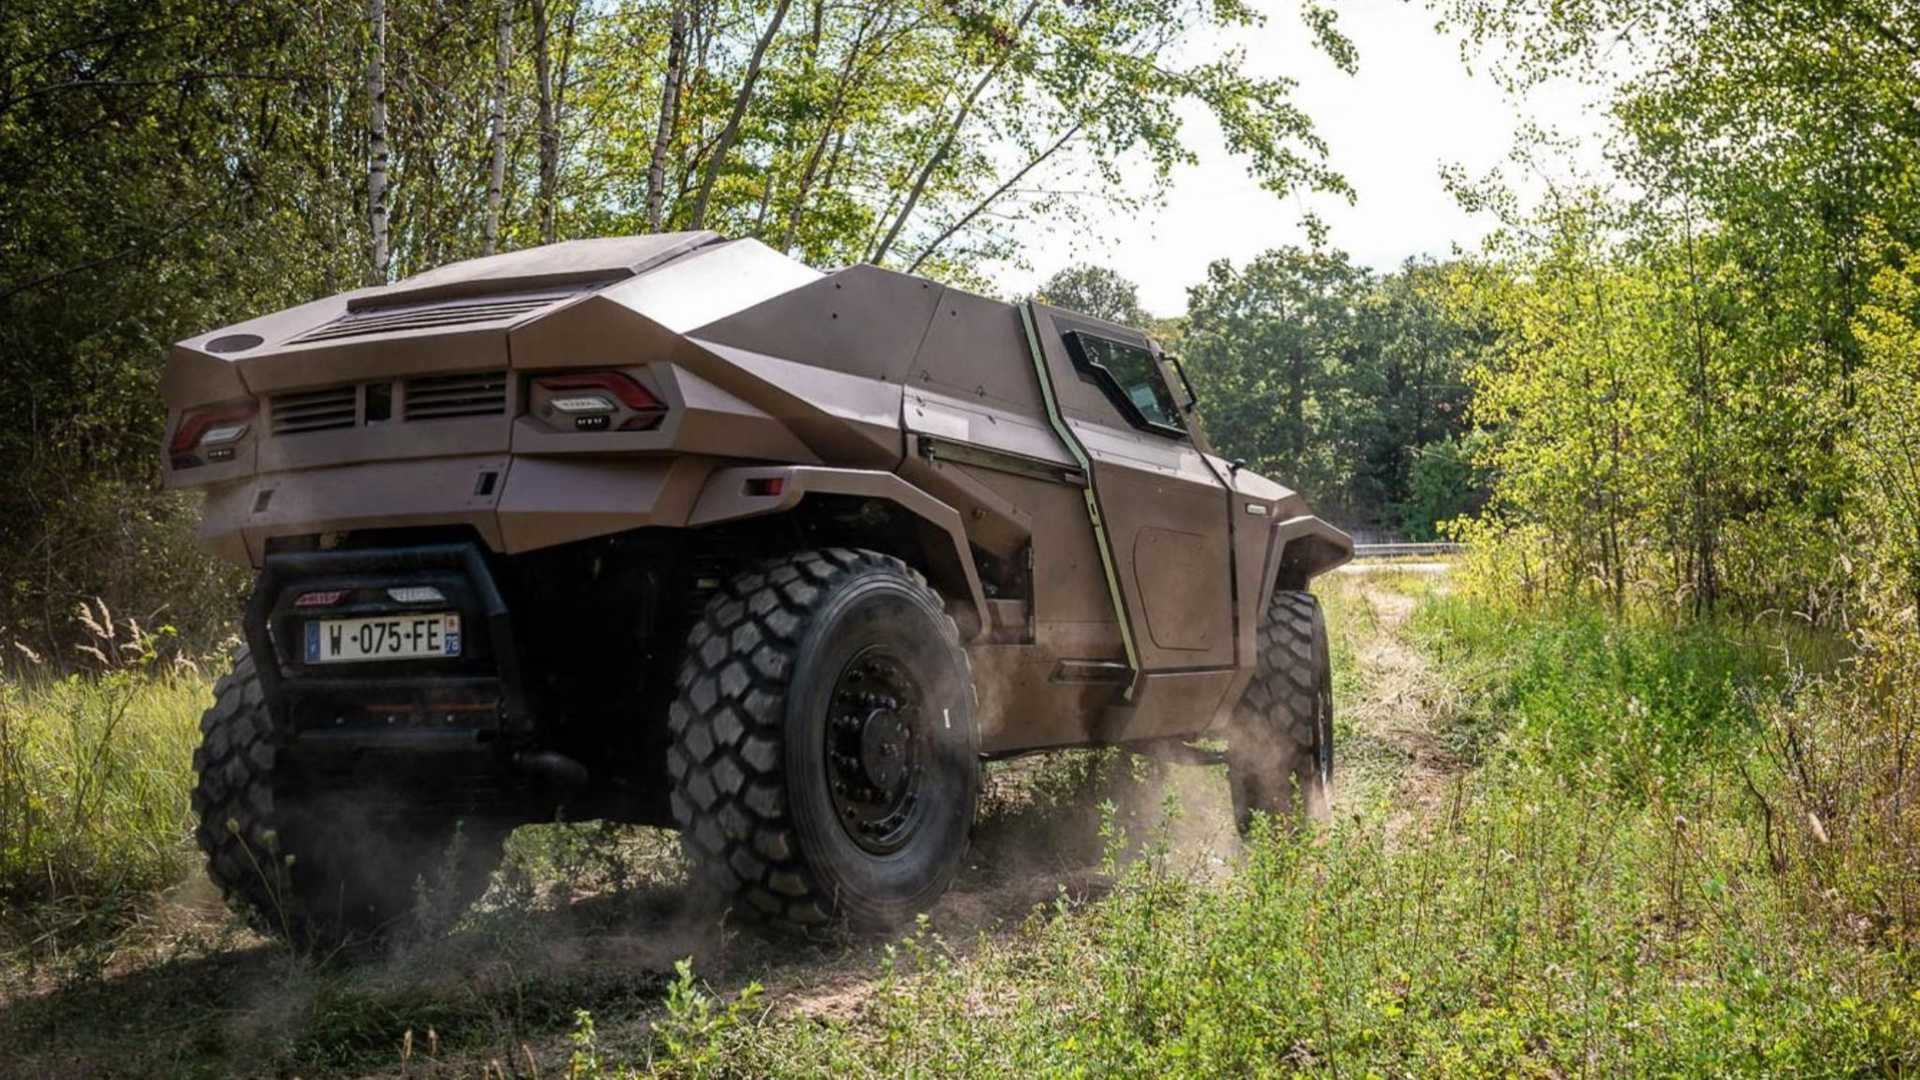 نمای عقب شاسی بلند نظامی آرکیوس اسکارابی / Arquus Scarabee Hybrid Military SUV